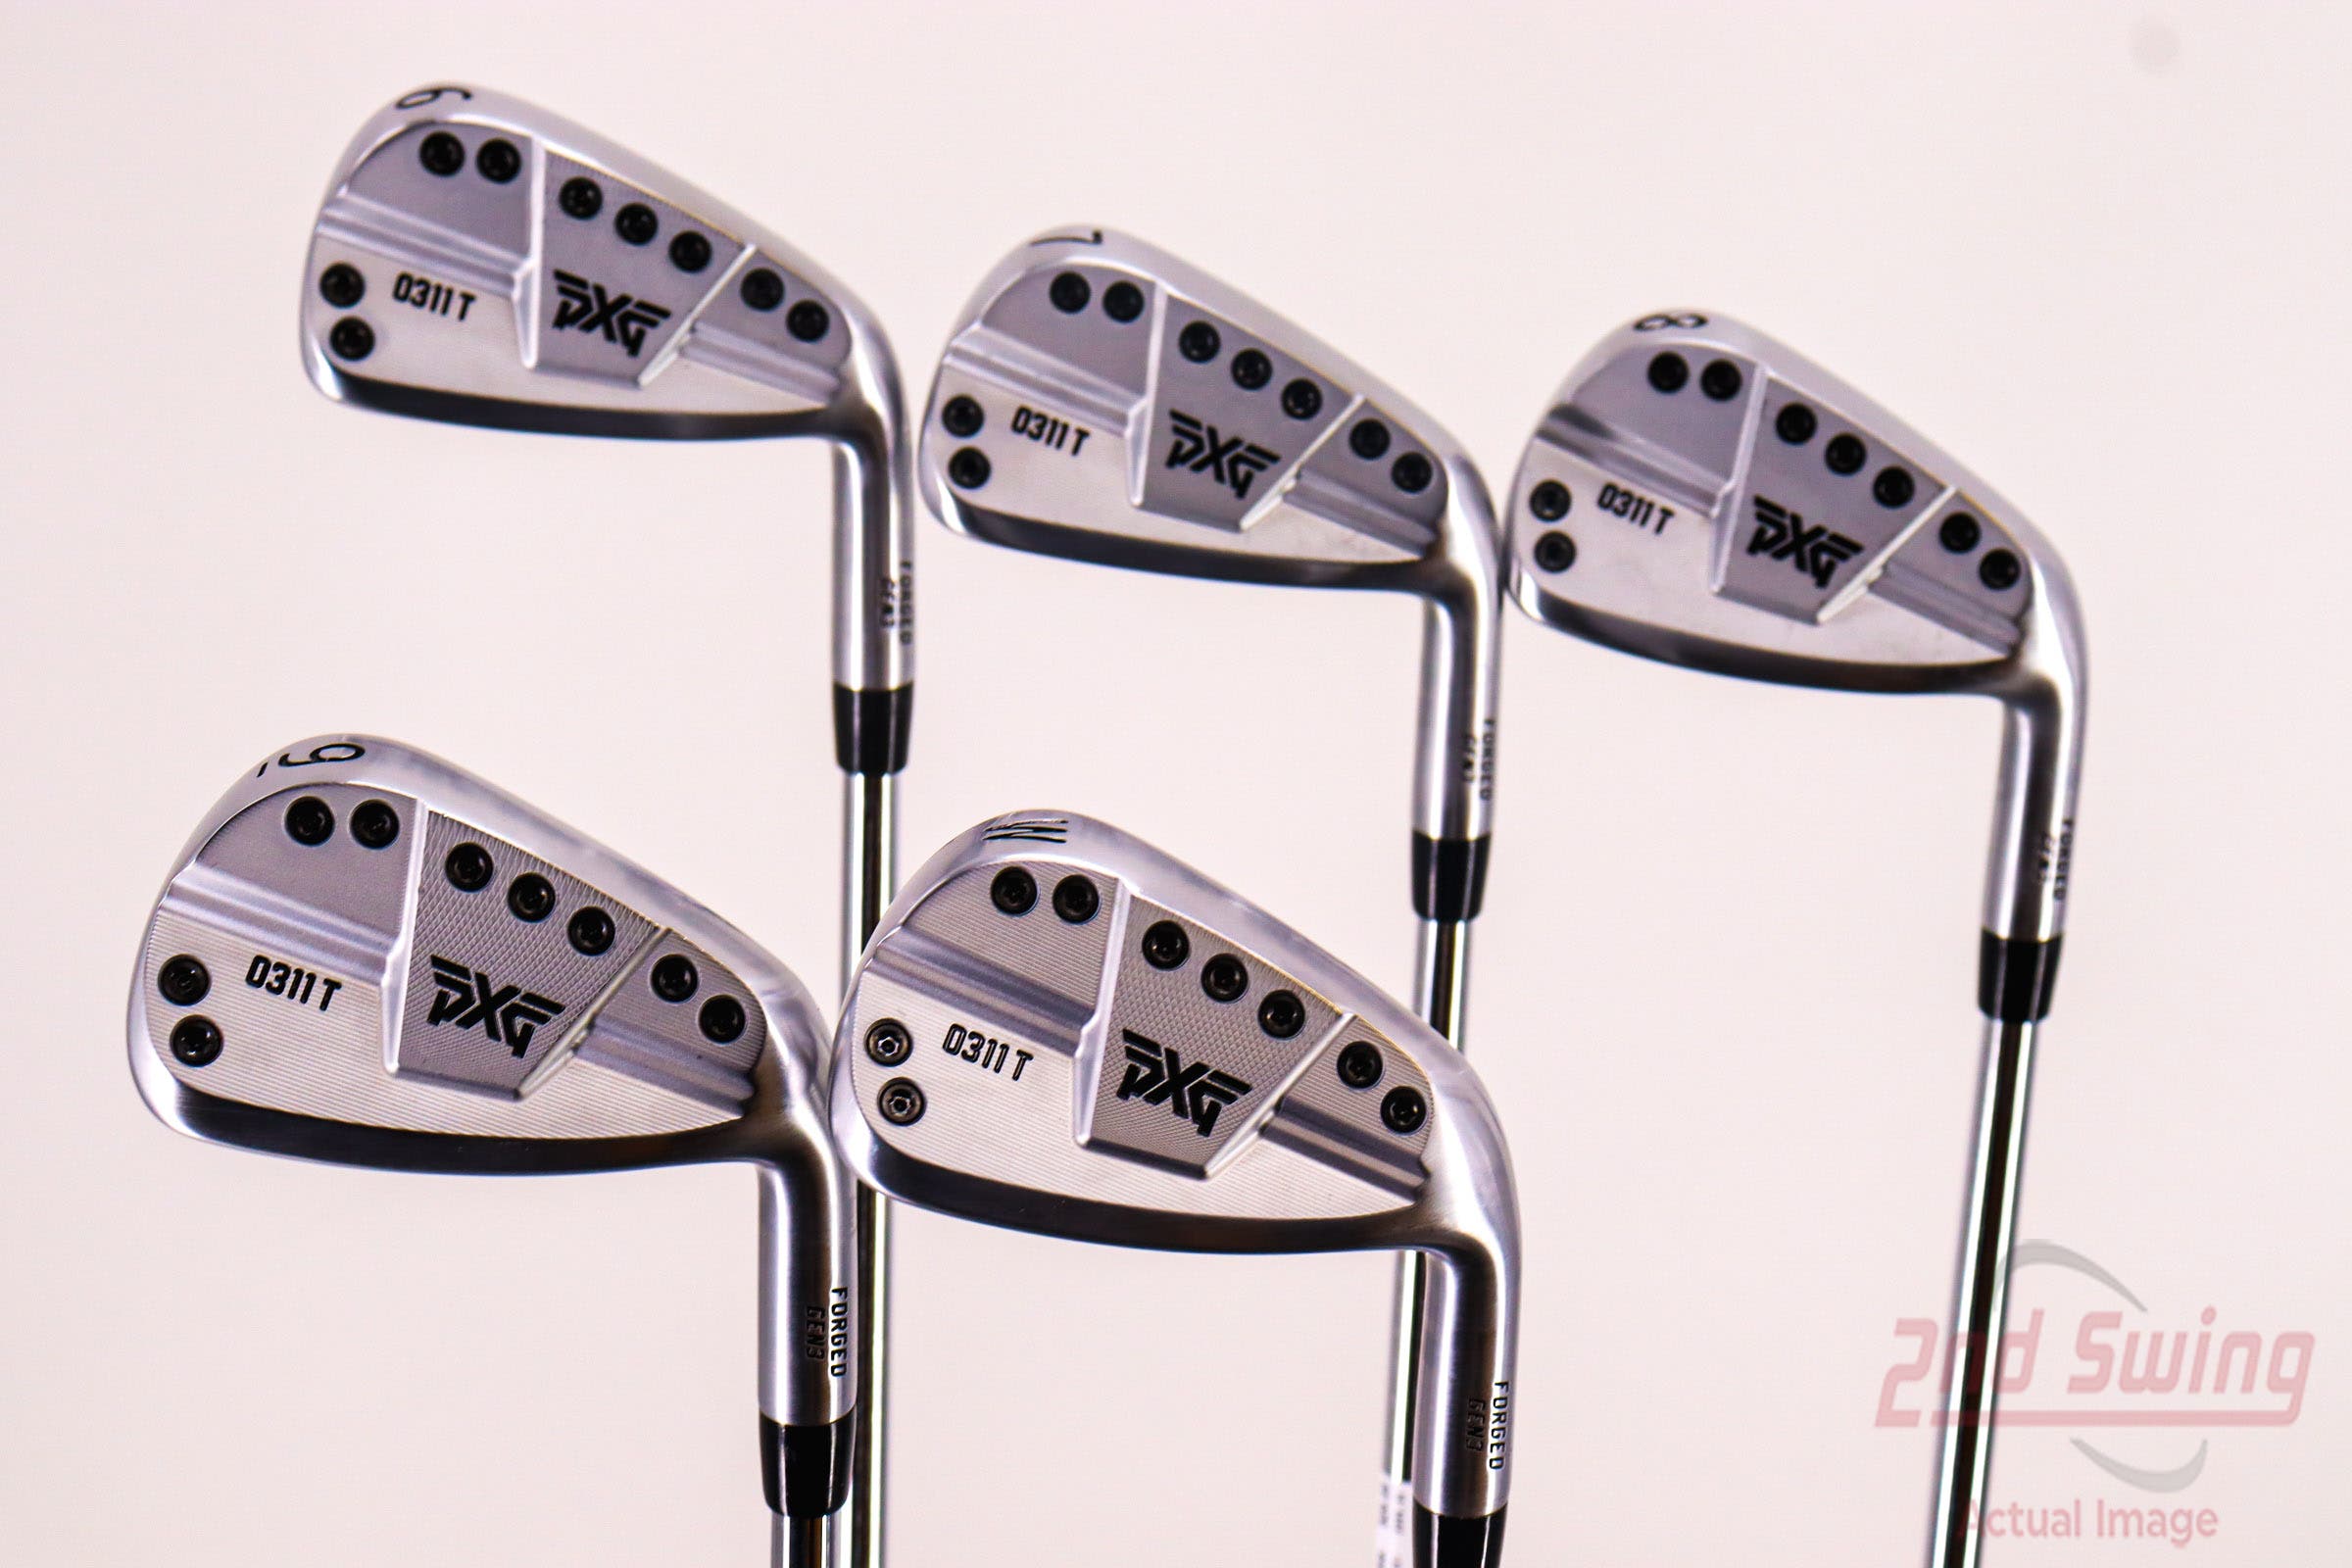 PXG 0311 T GEN3 Iron Set | 2nd Swing Golf